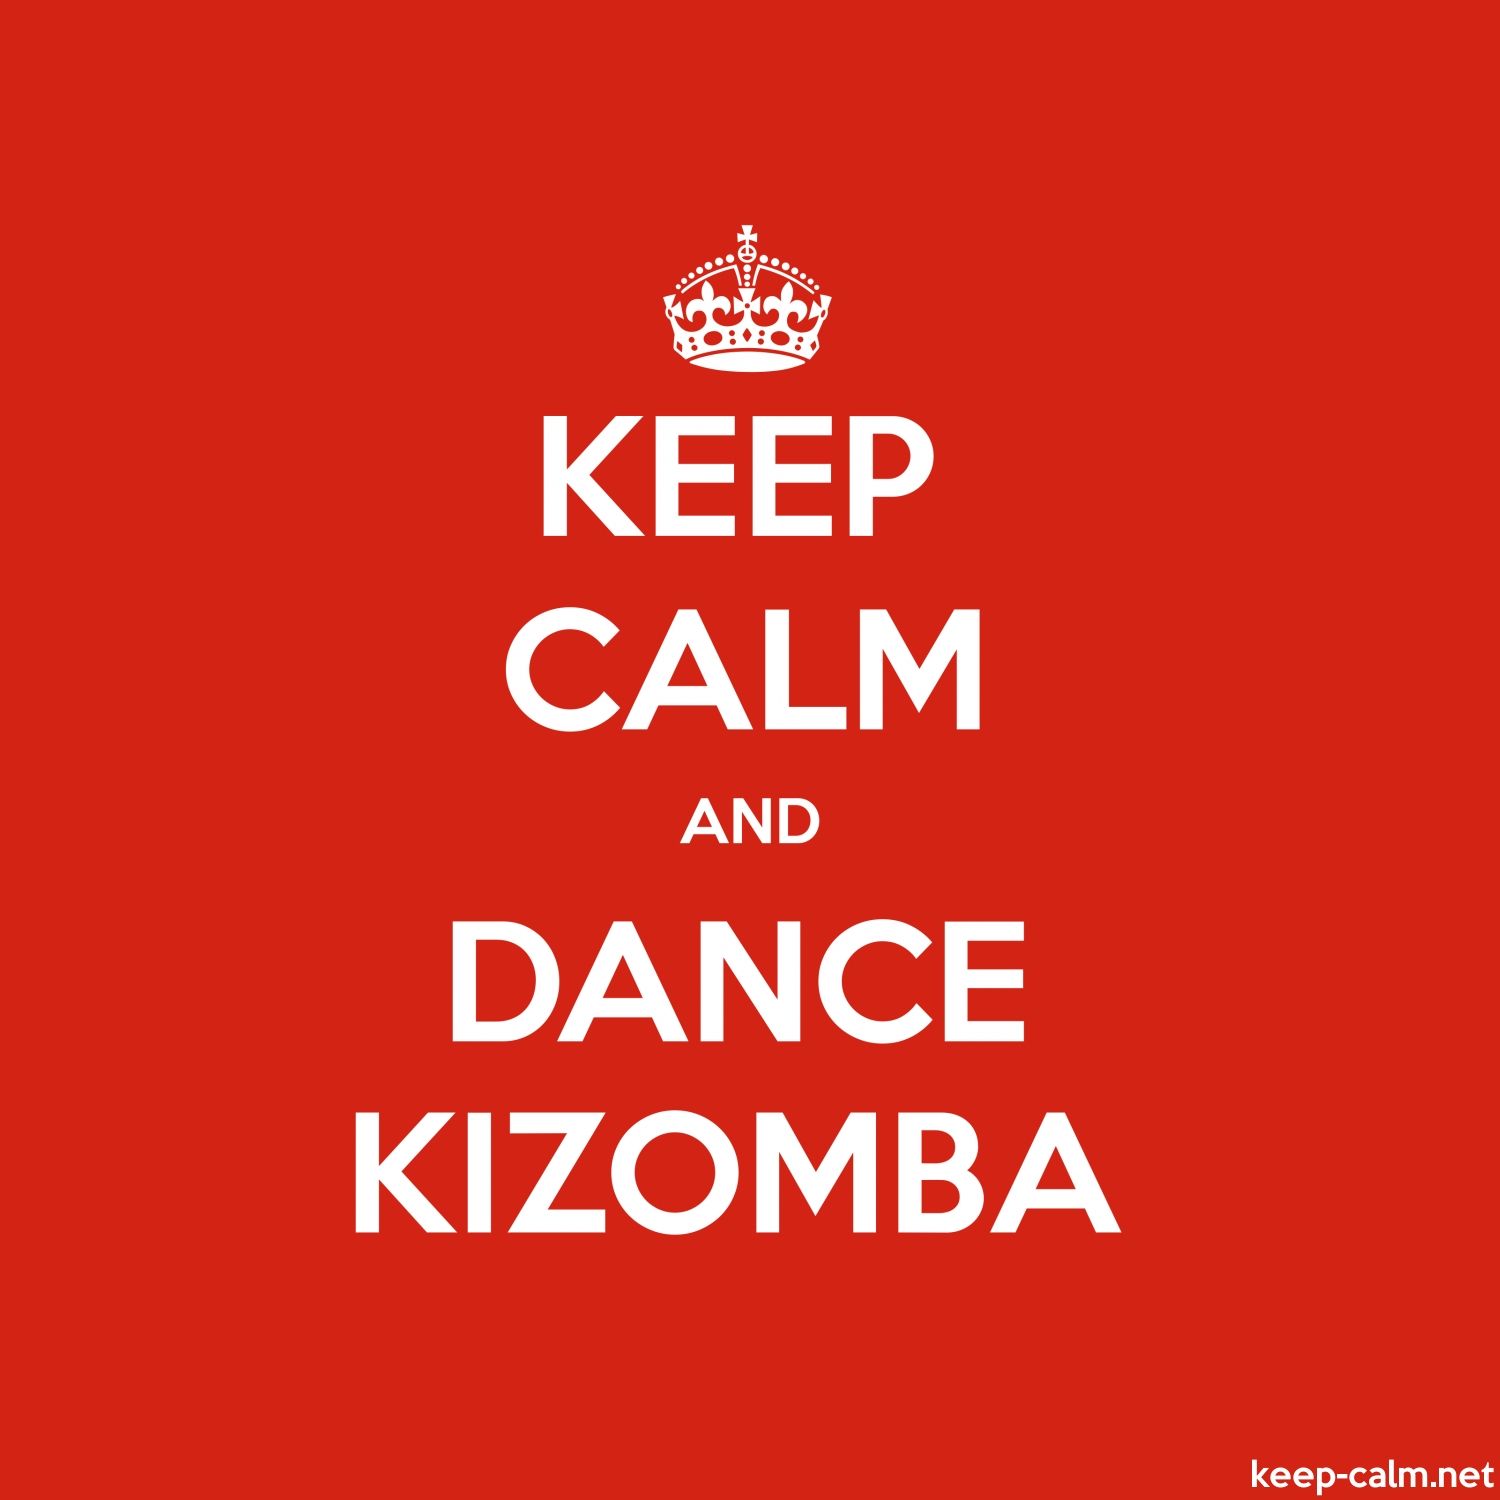 KEEP CALM AND DANCE KIZOMBA